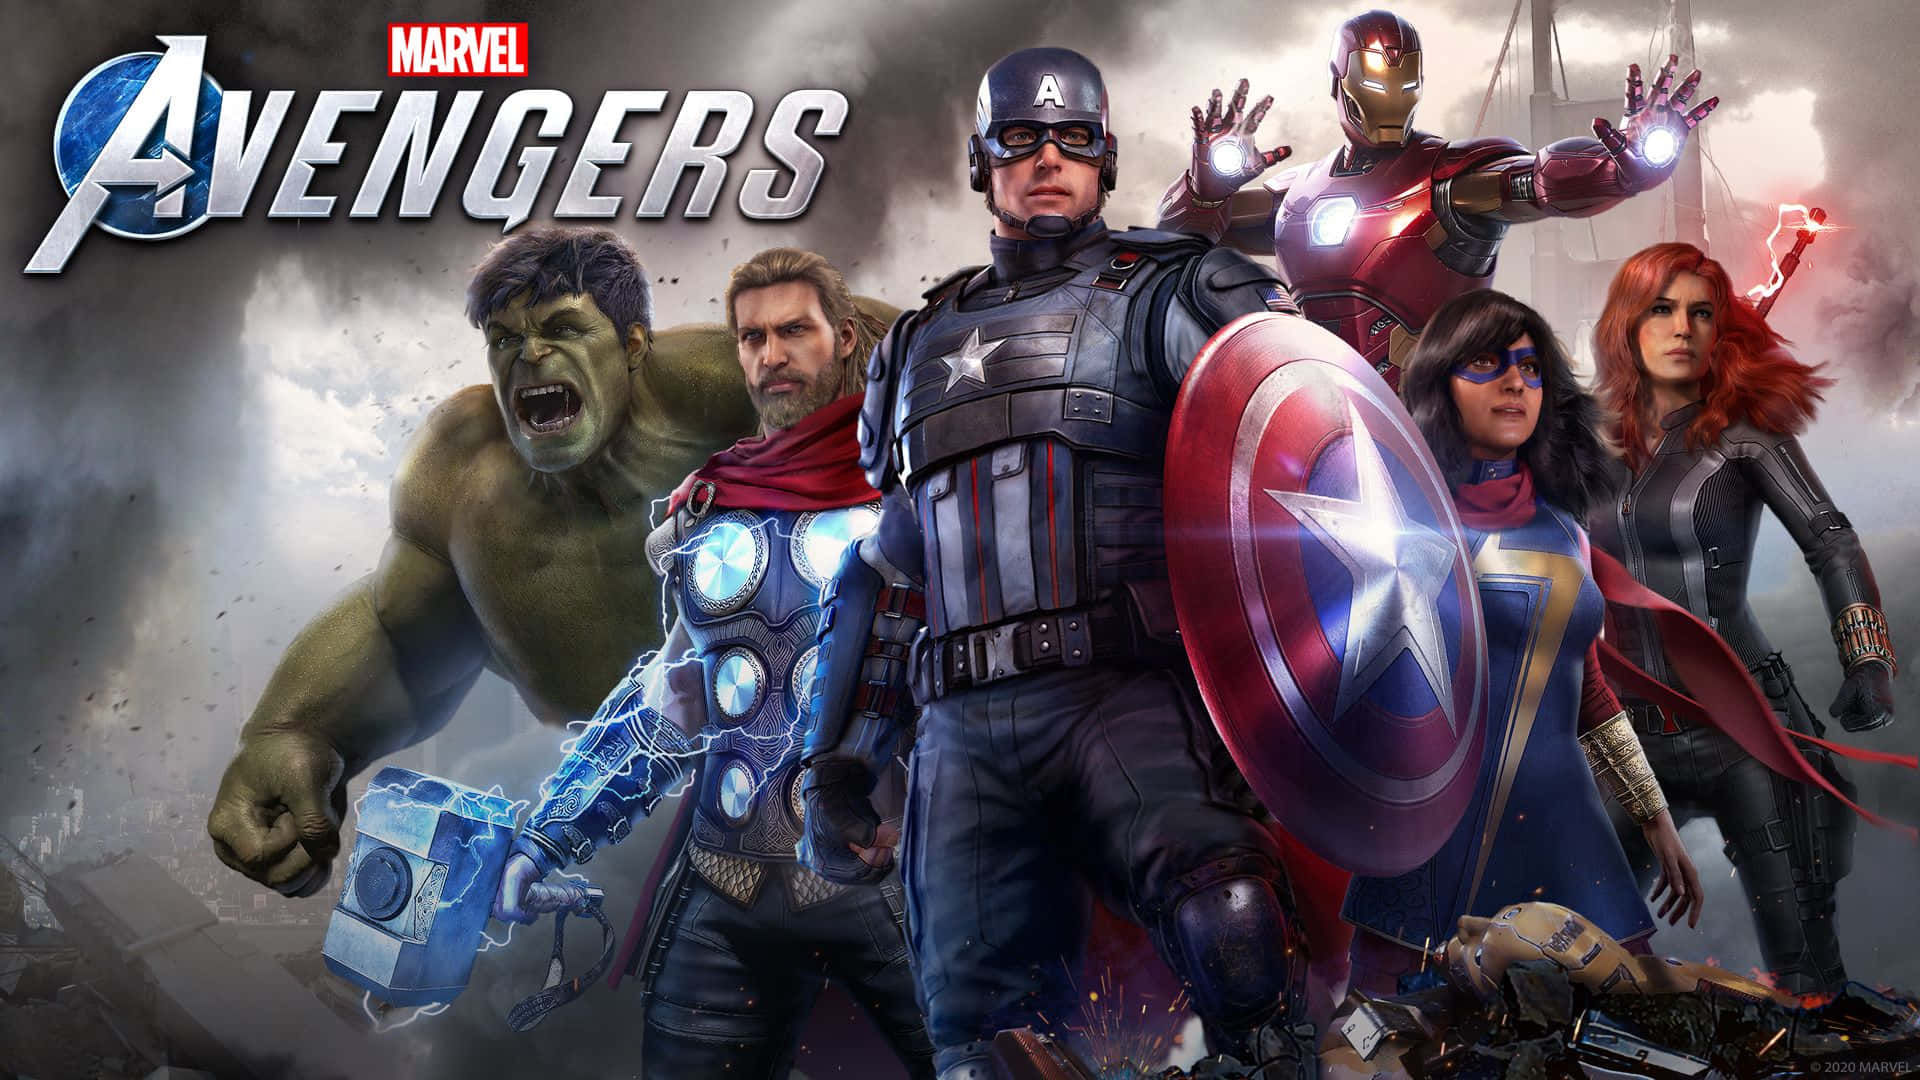 Marvel Avengers Action Adventure Game Wallpaper